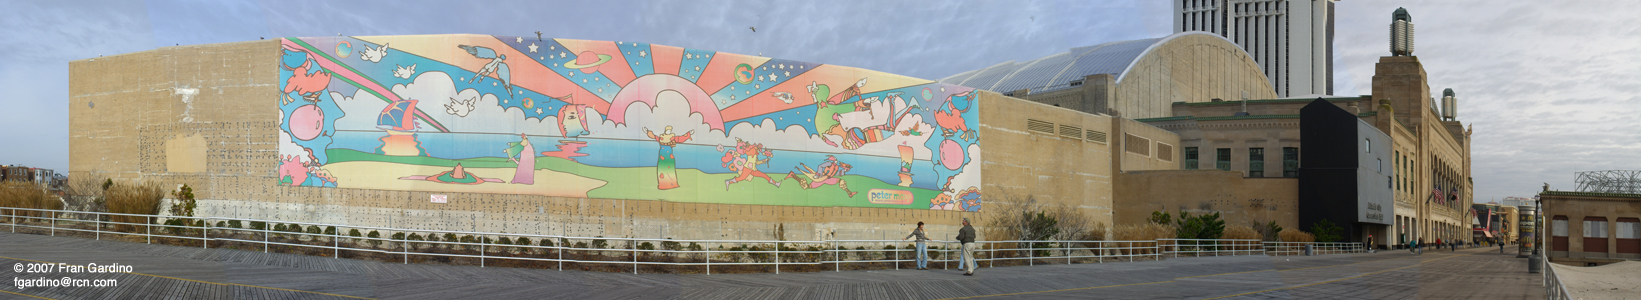 Atlantic City Mural